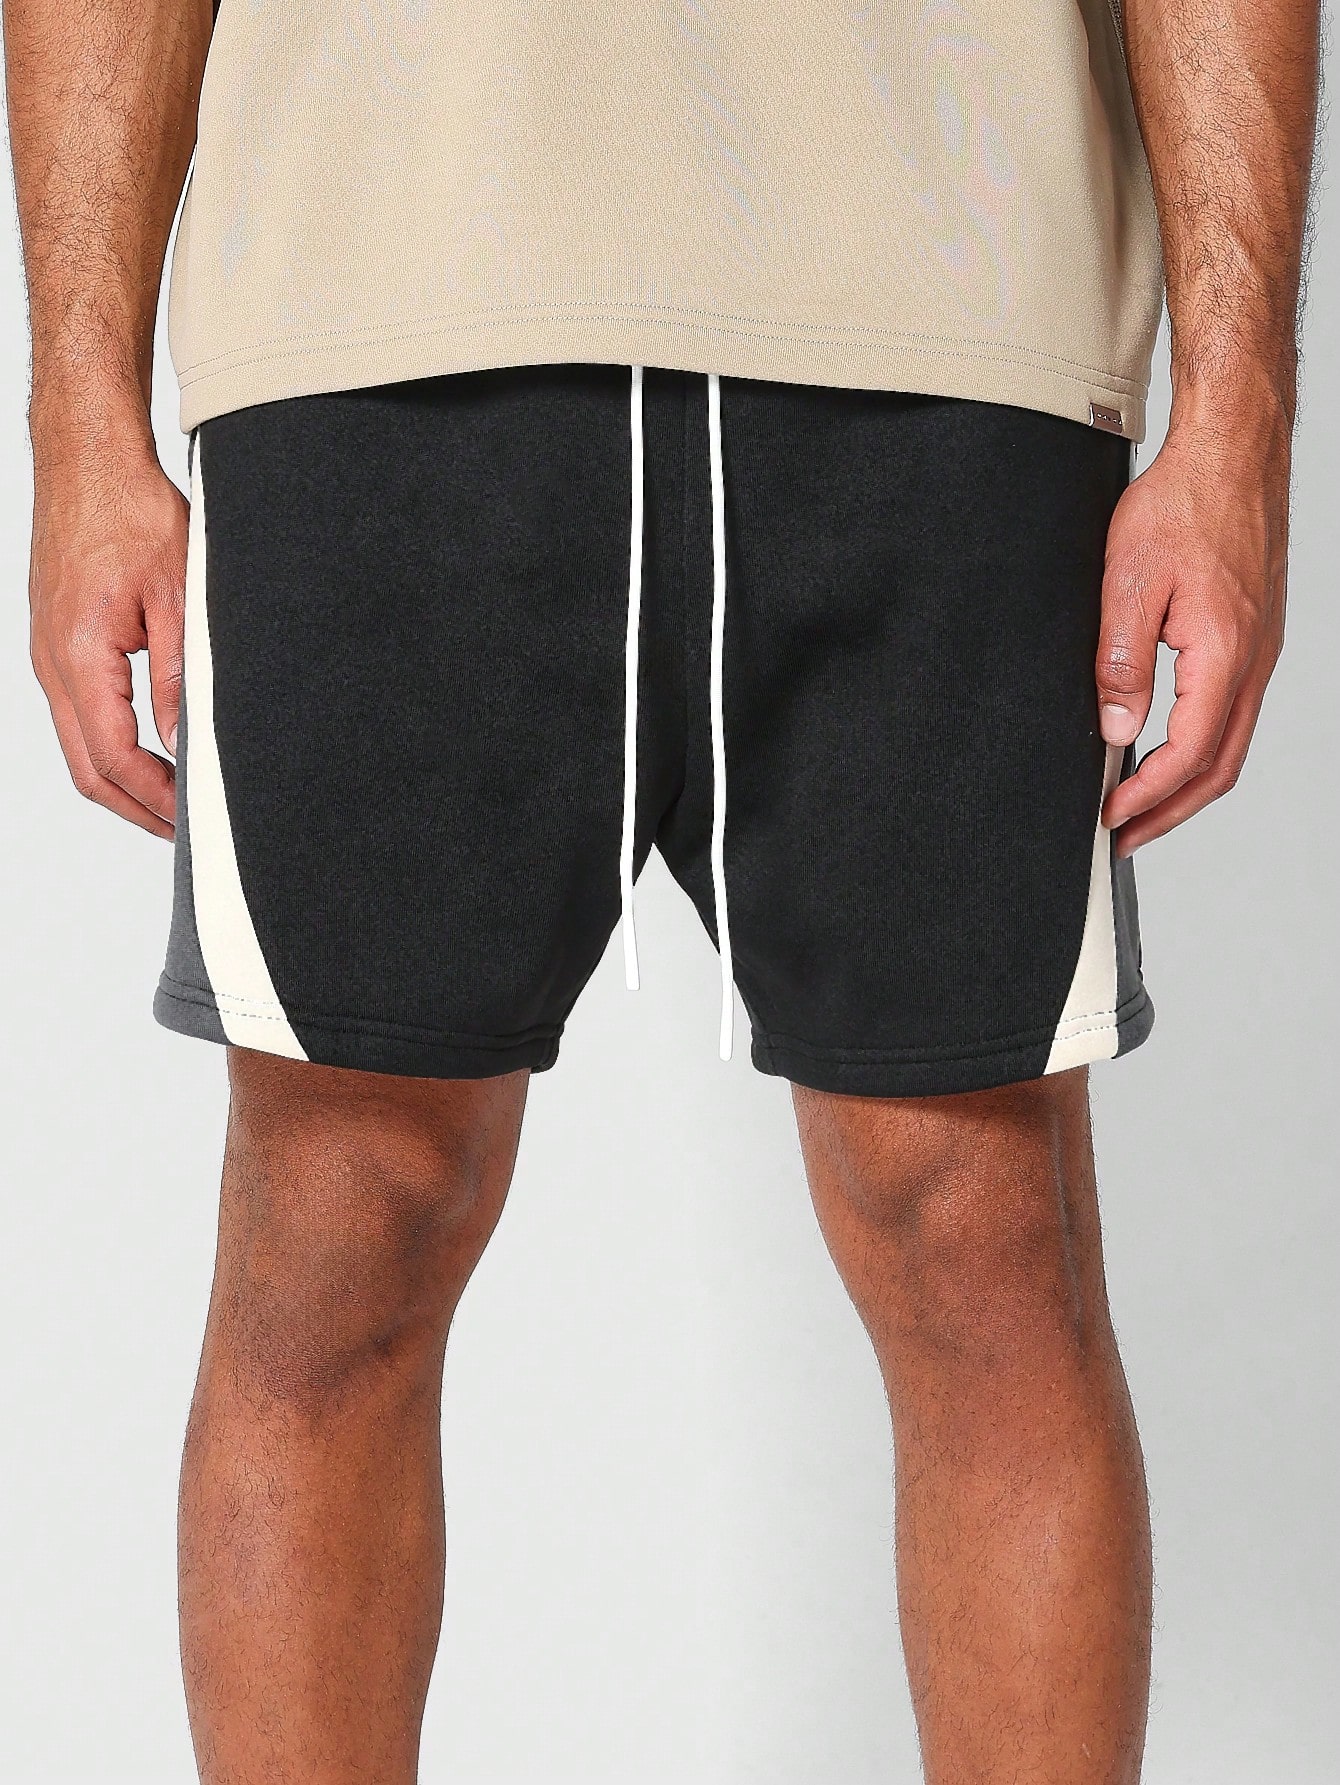 SUMWON Короткие шорты с заниженным шаговым швом и контрастными вставками, многоцветный short